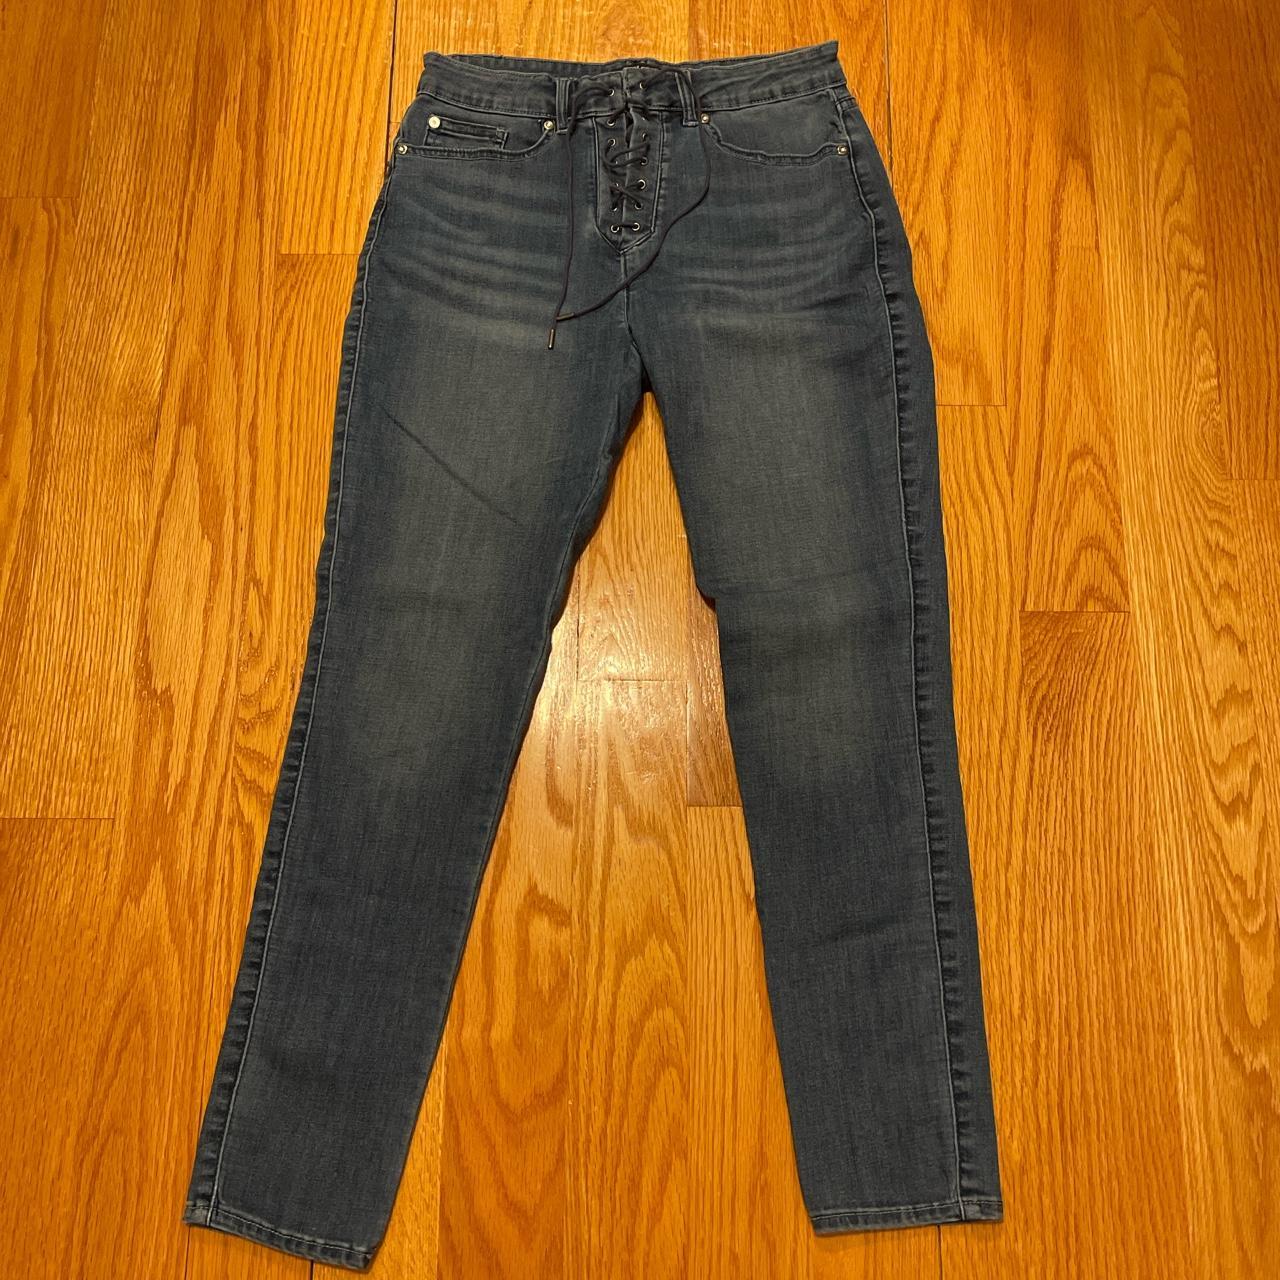 U.S. Polo Assn. Women's Navy Jeans (2)